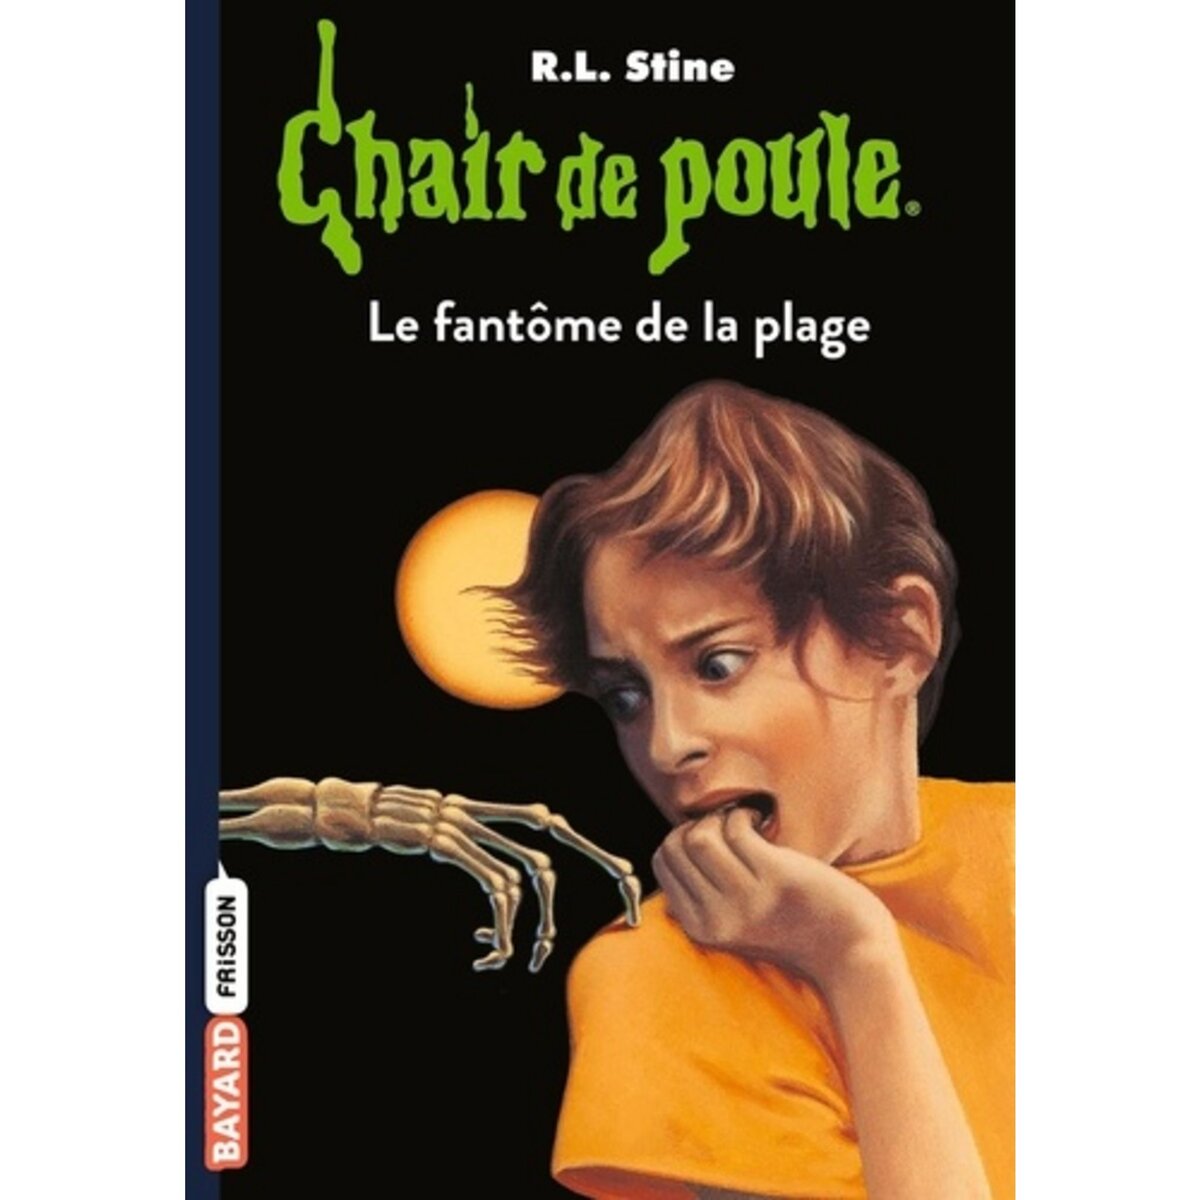  CHAIR DE POULE TOME 8 : LE FANTOME DE LA PLAGE, Stine R. L.